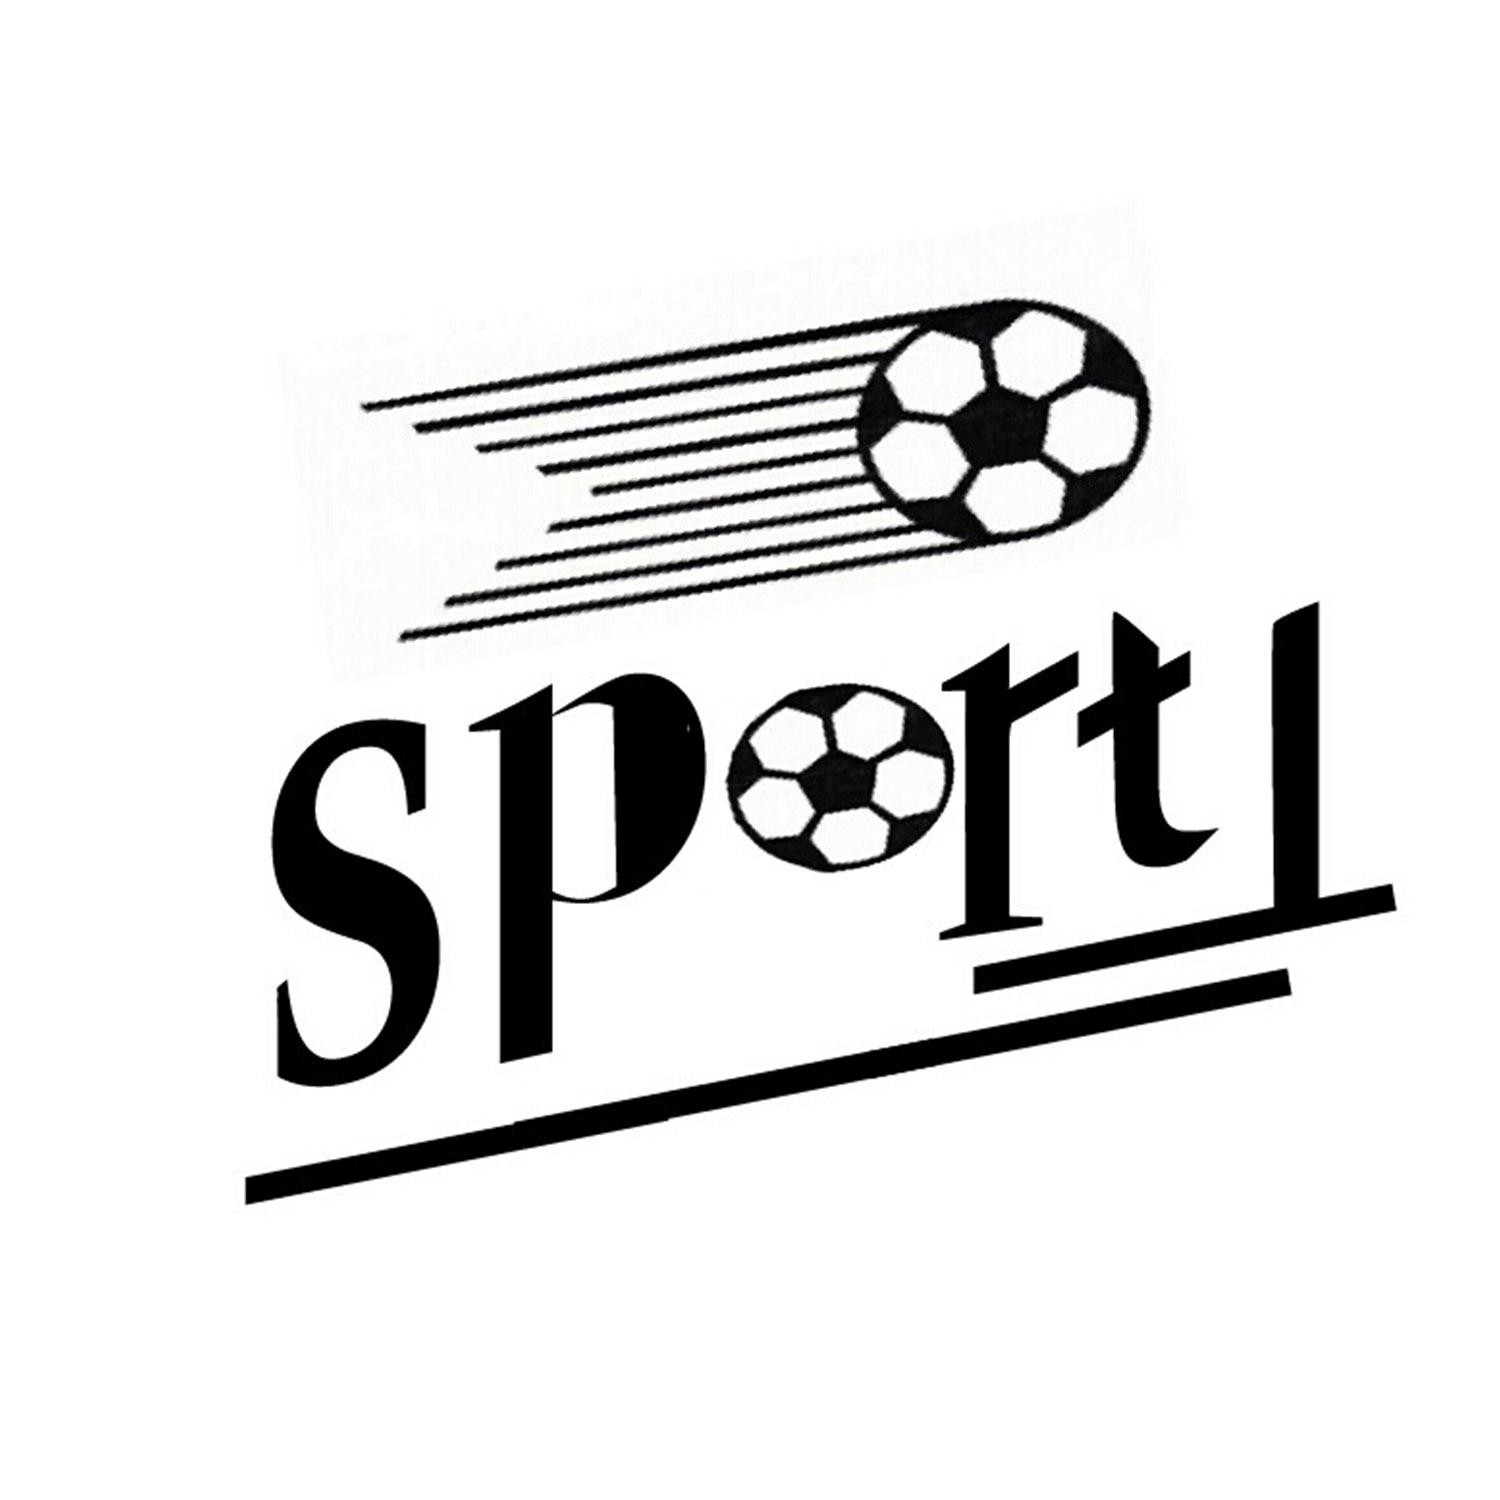 sport字体图片图片